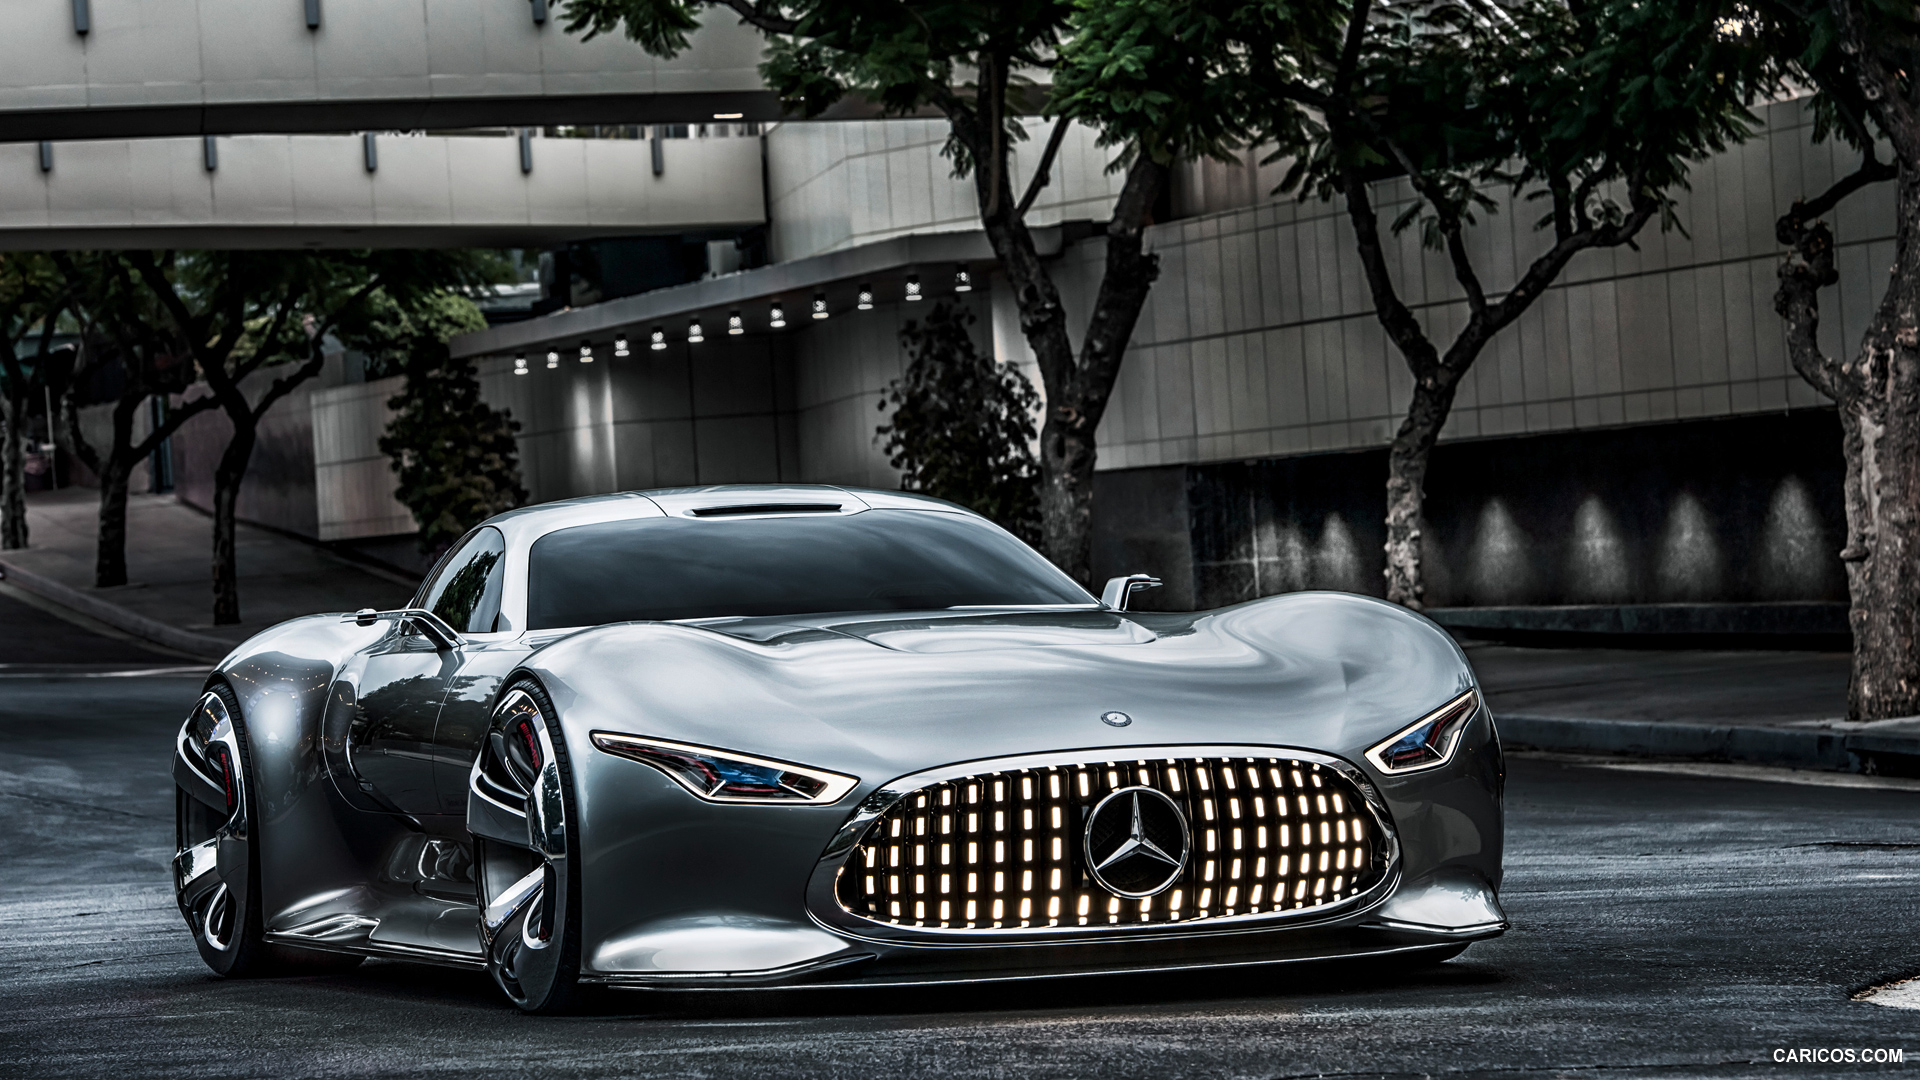 si puedes Caligrafía Burro 2013 Mercedes-Benz AMG Vision Gran Turismo Concept | Caricos